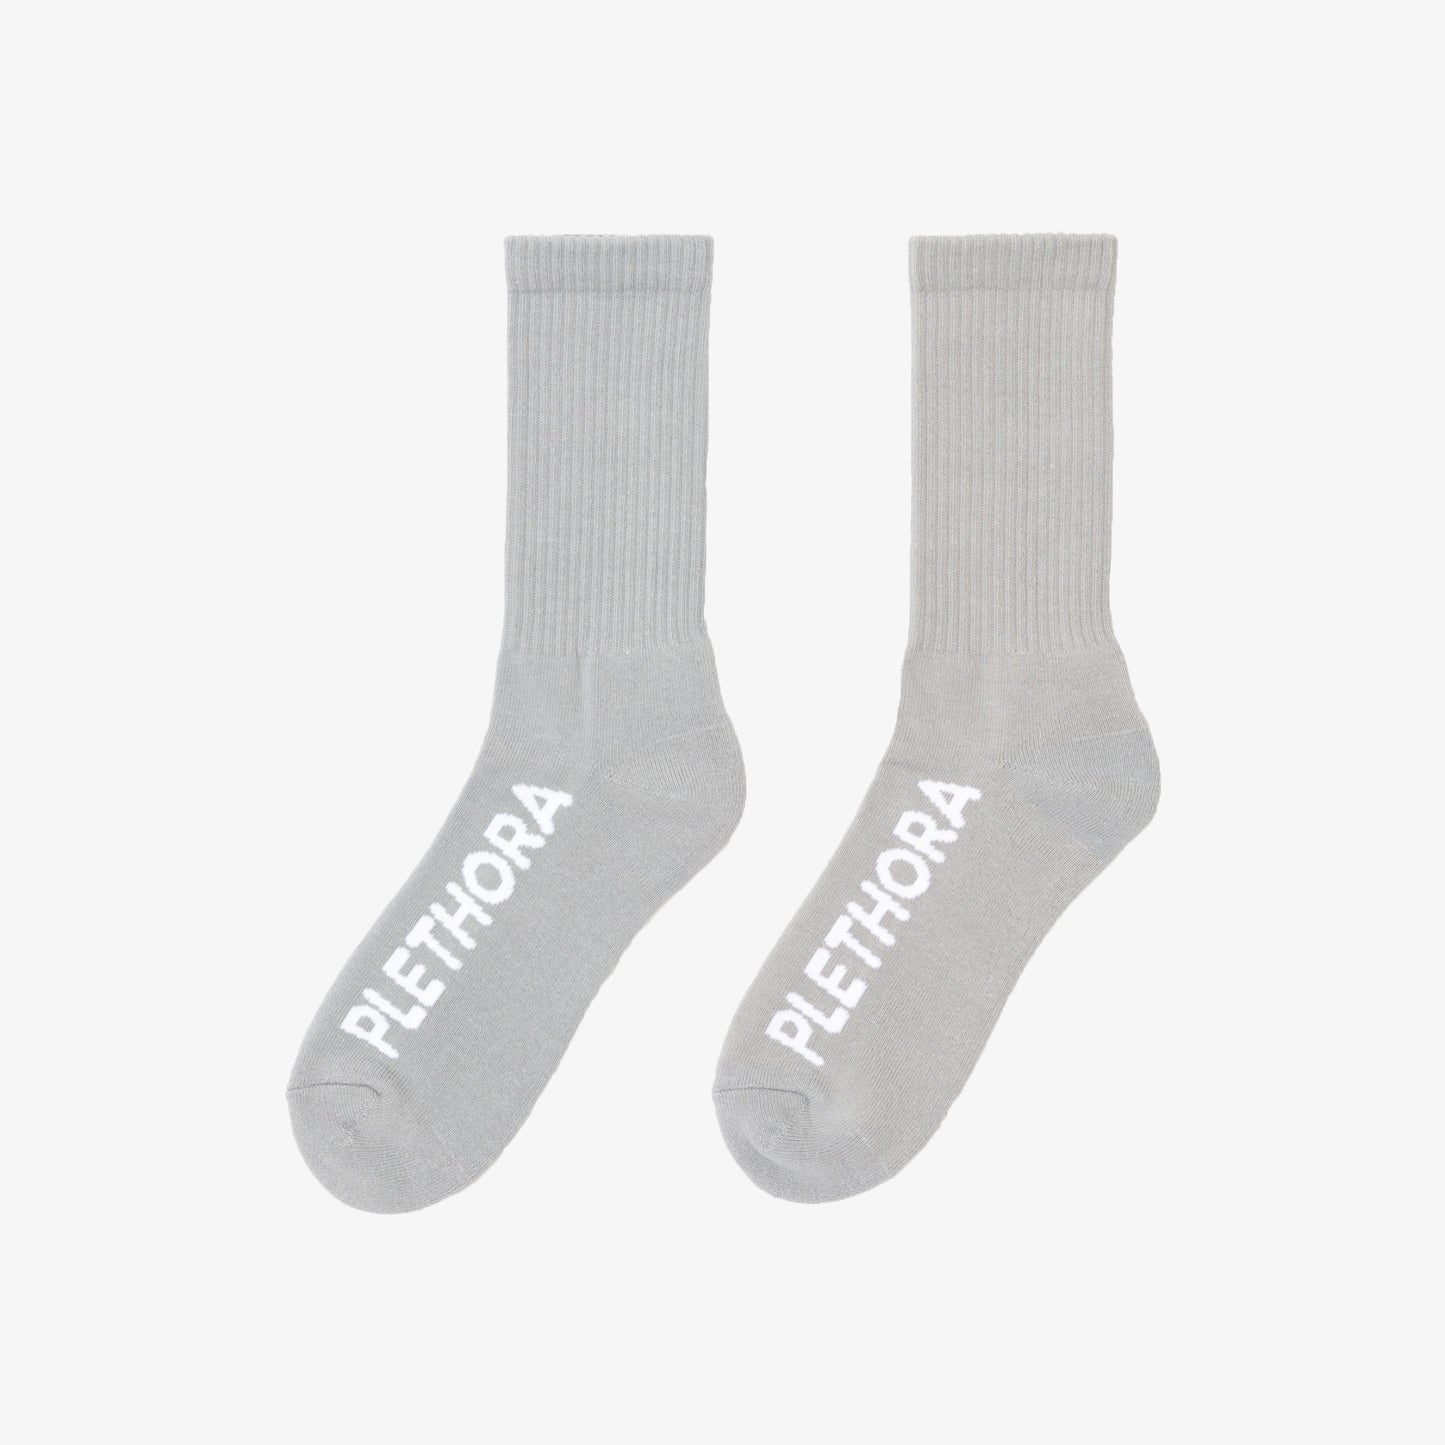 PLETHORA "Italic" Socks - Ash / White